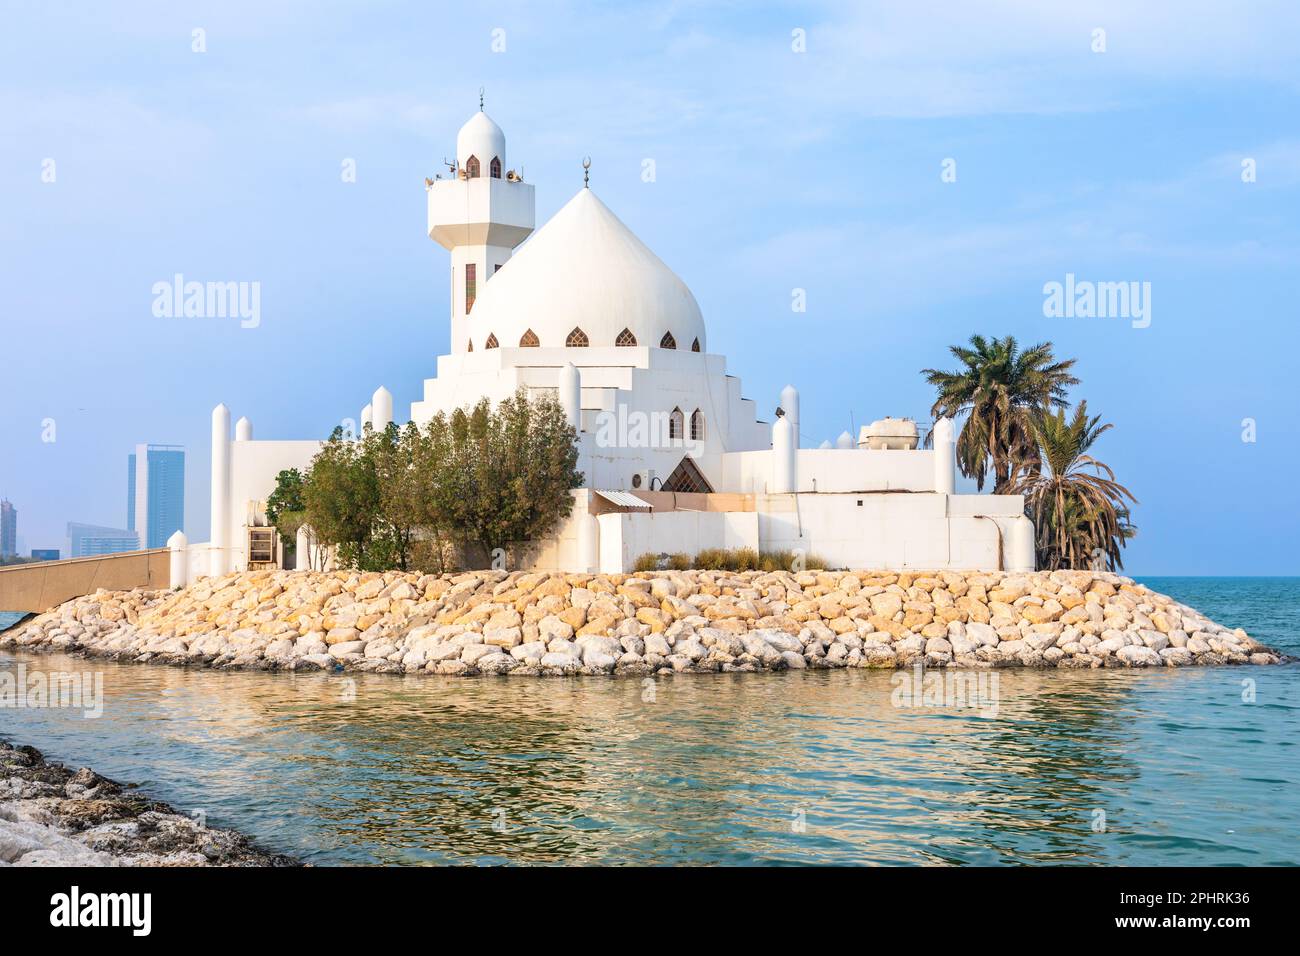 White Salem Bin Laden Moschea costruita sull'isola con il mare sullo sfondo, al Khobar, Arabia Saudita Foto Stock